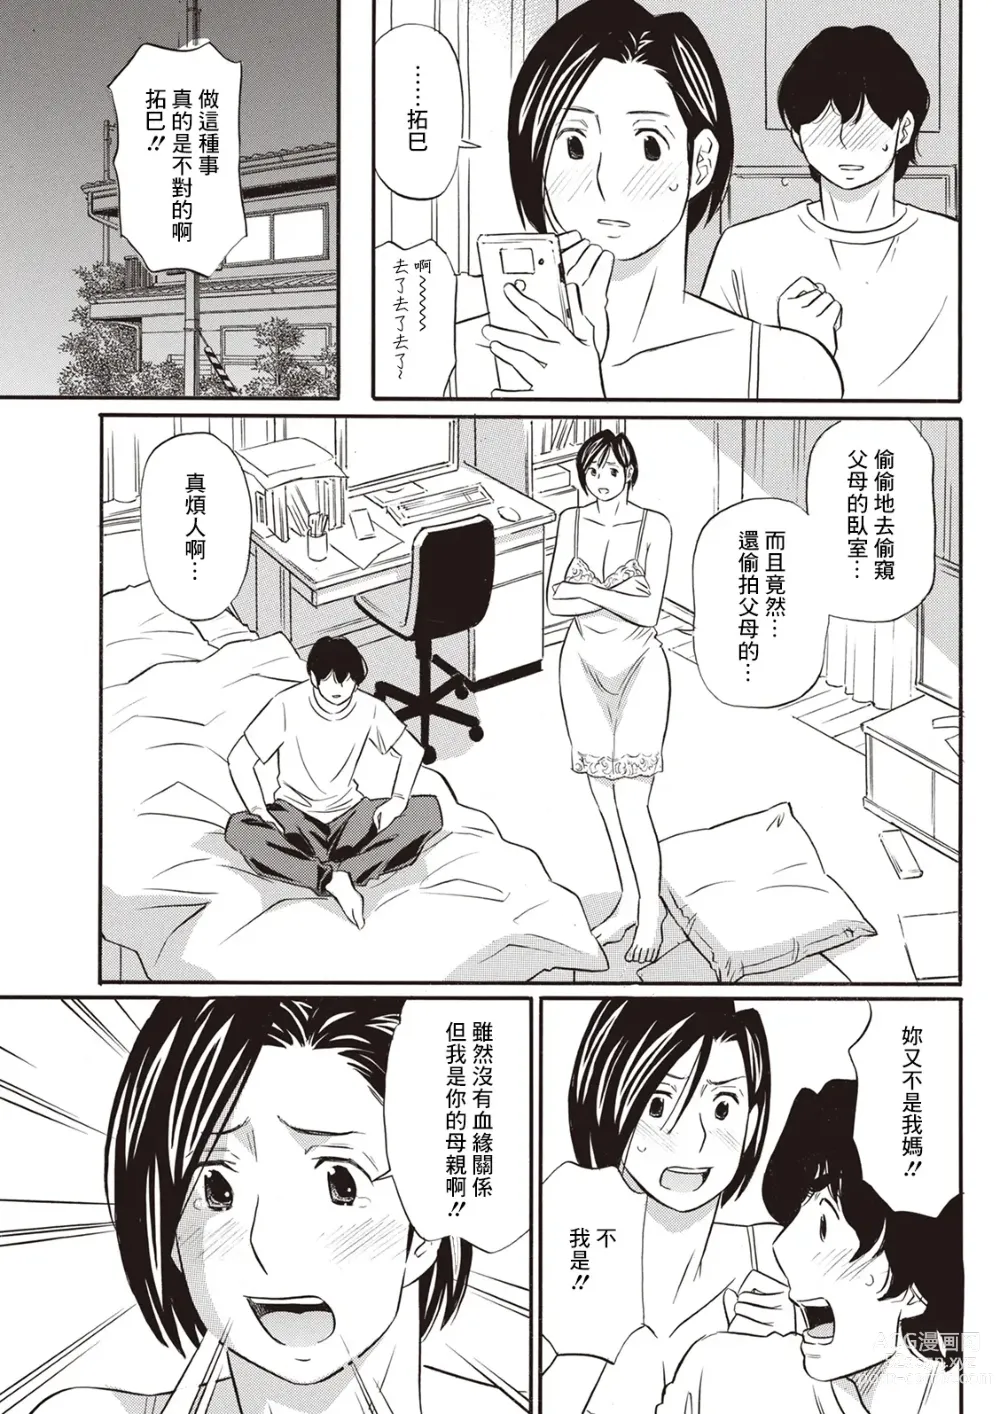 Page 7 of manga Afureru Haha